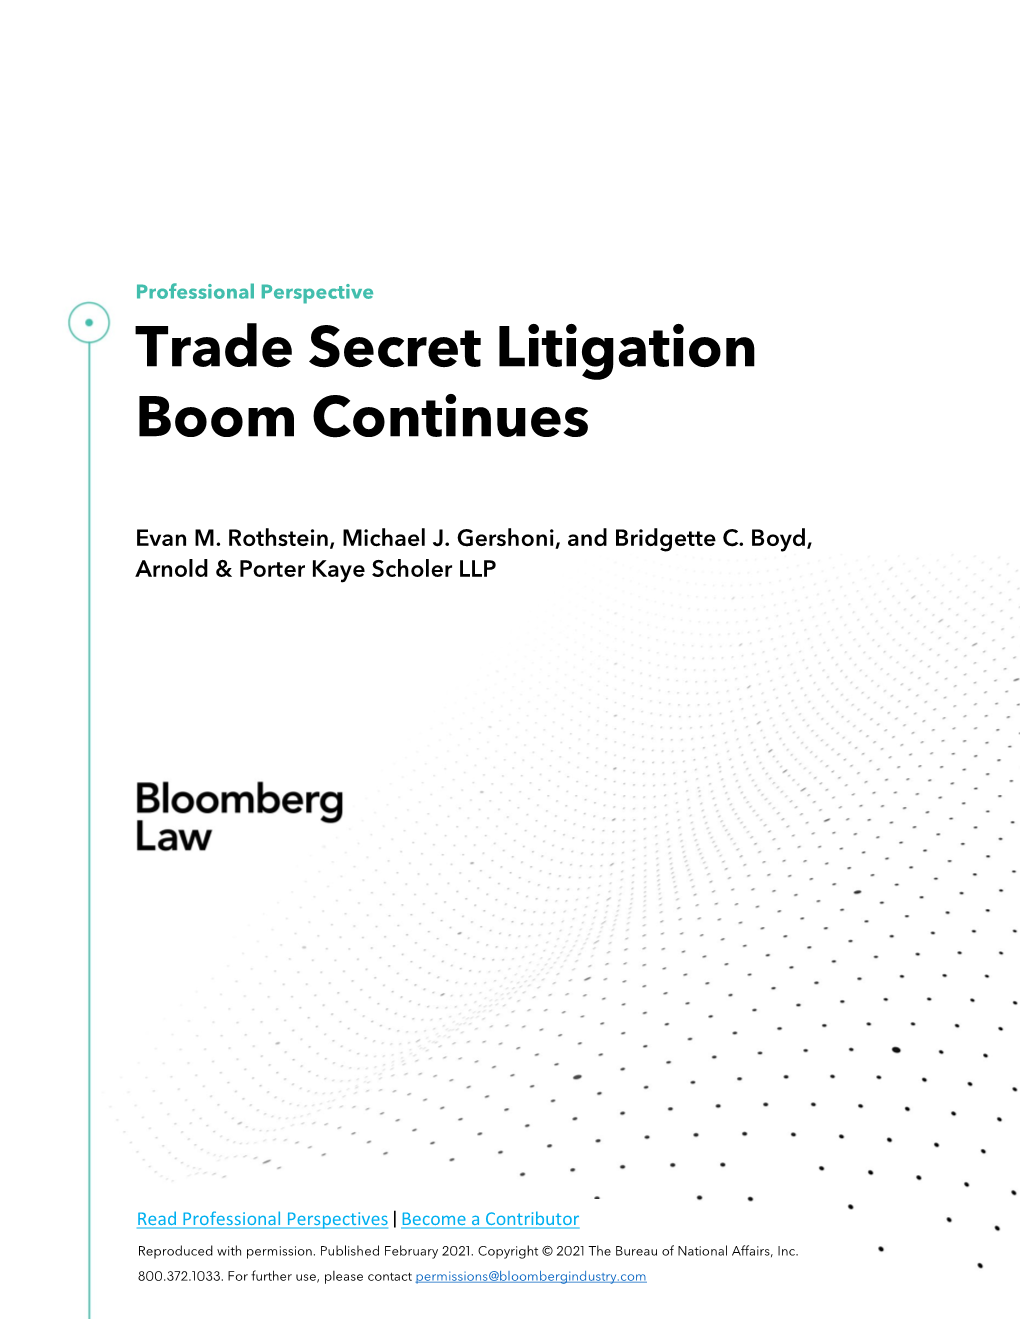 Trade Secret Litigation Boom Continues